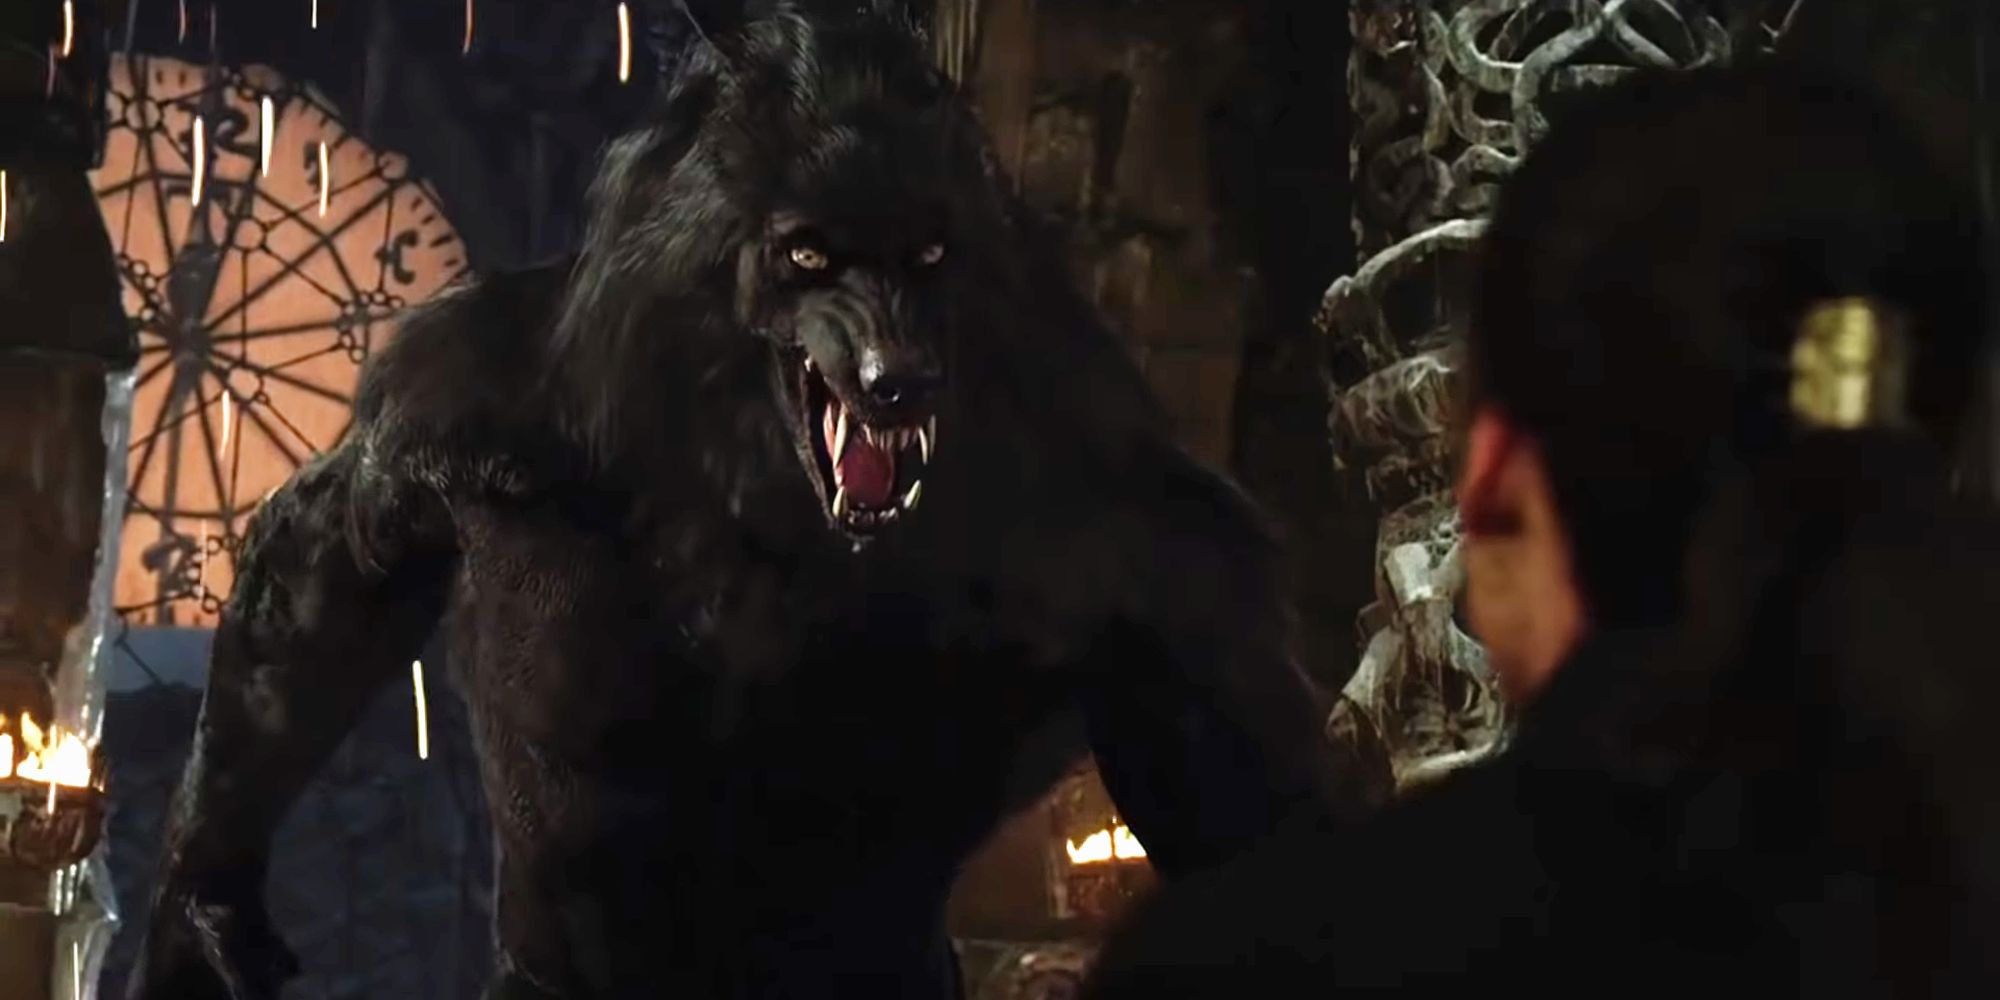 Gabriel Van Helsing confronting Dracula in his werewolf form in Van Helsing (2004)